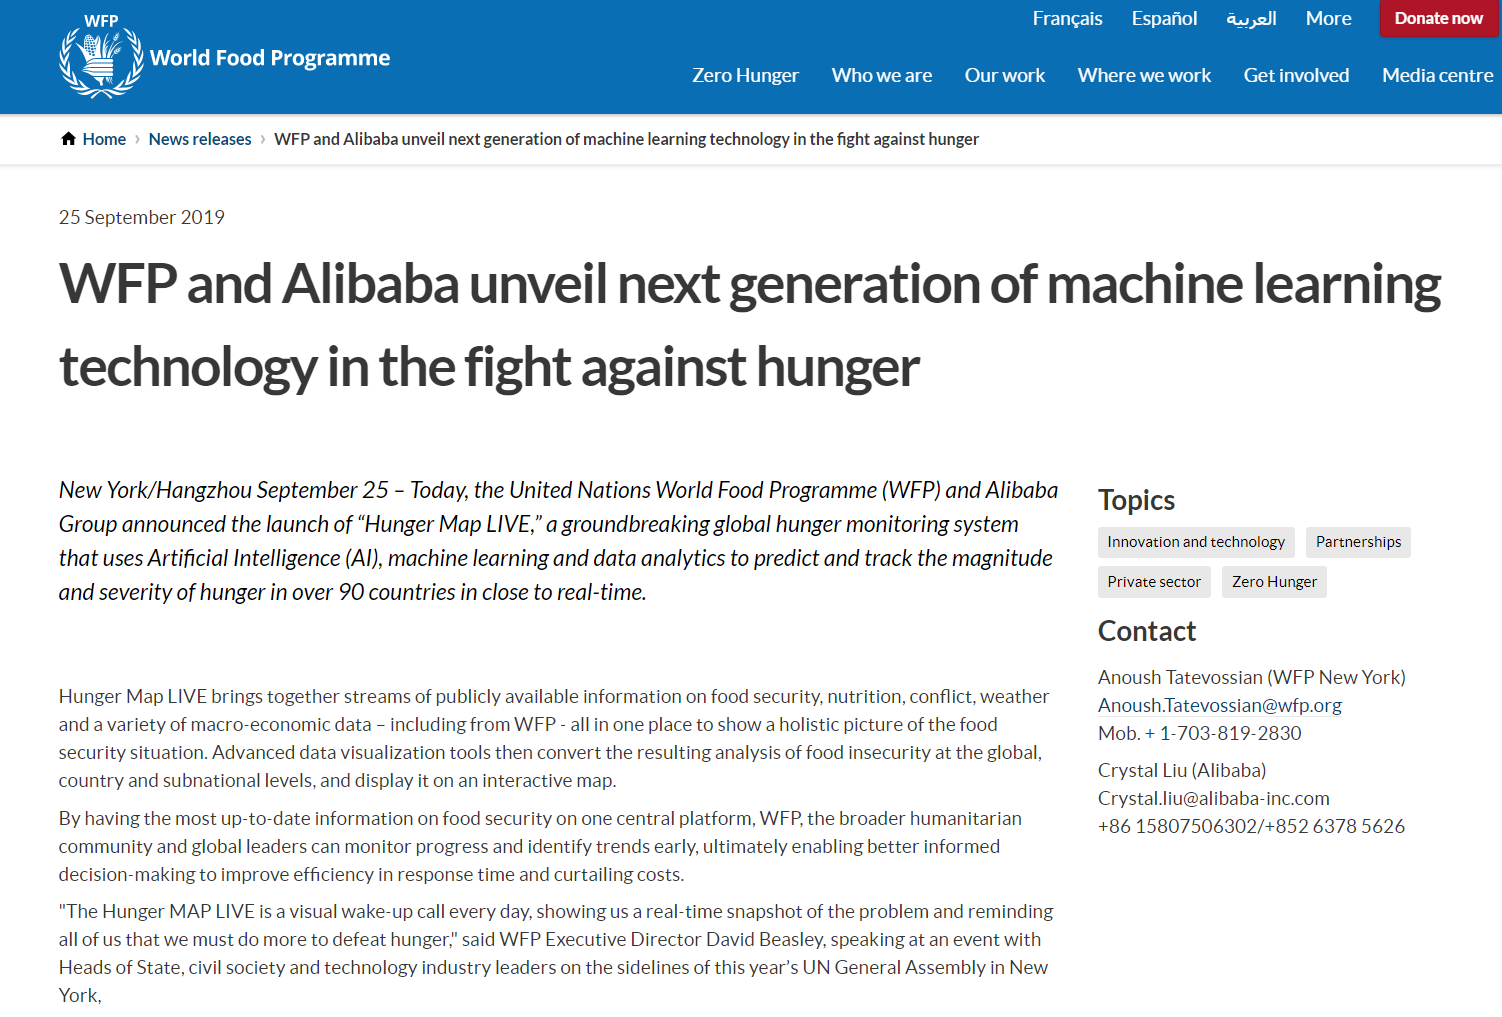 阿里巴巴与联合国发布“饥饿地图“ 井贤栋:我们共同目标是可持续发展